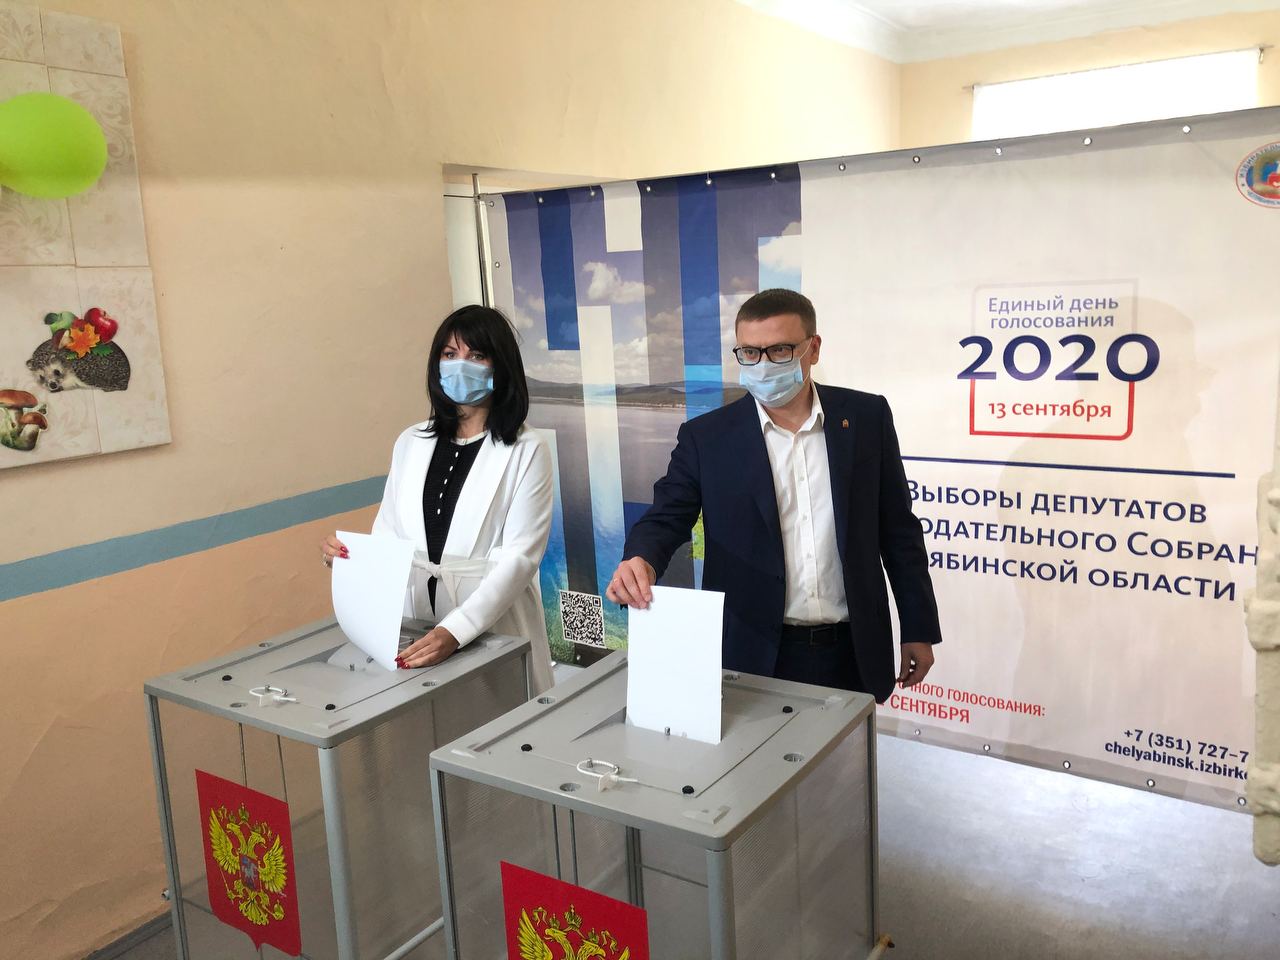 Алексей Текслер с супругой Ириной приехали проголосовать в родную школу губернатора 